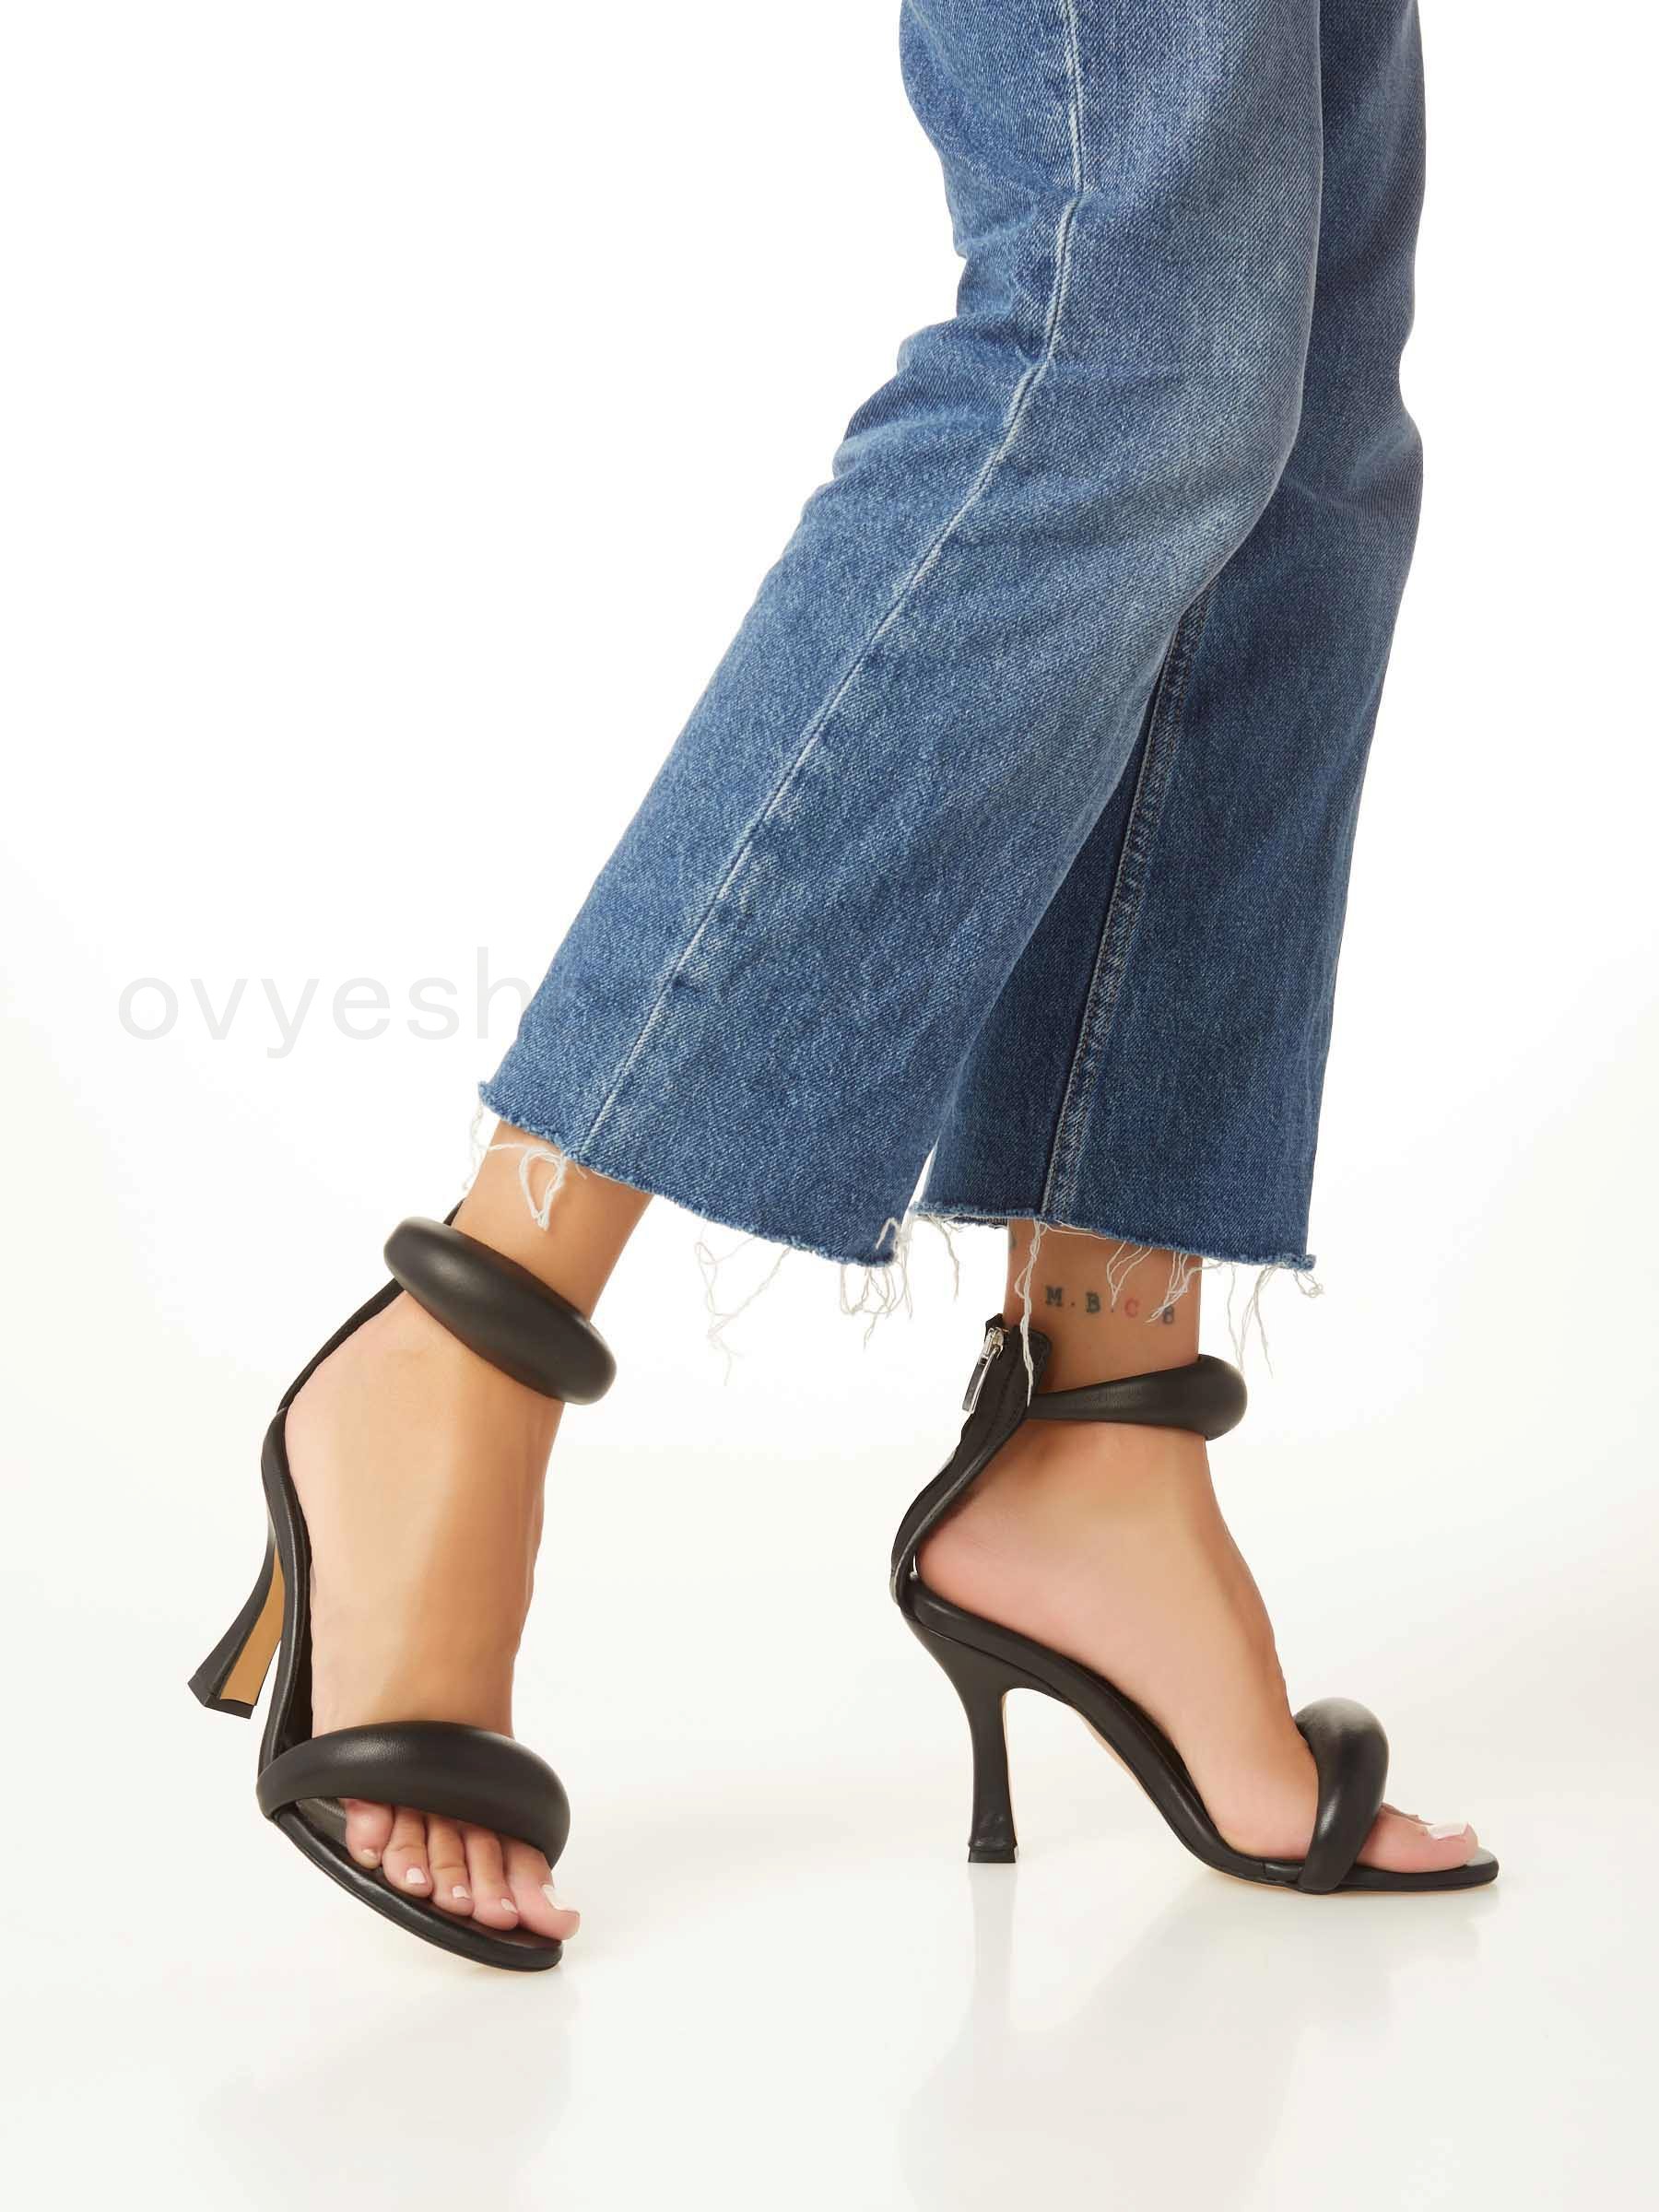 (image for) ovye shop Leather Heel Sandal F0817885-0652